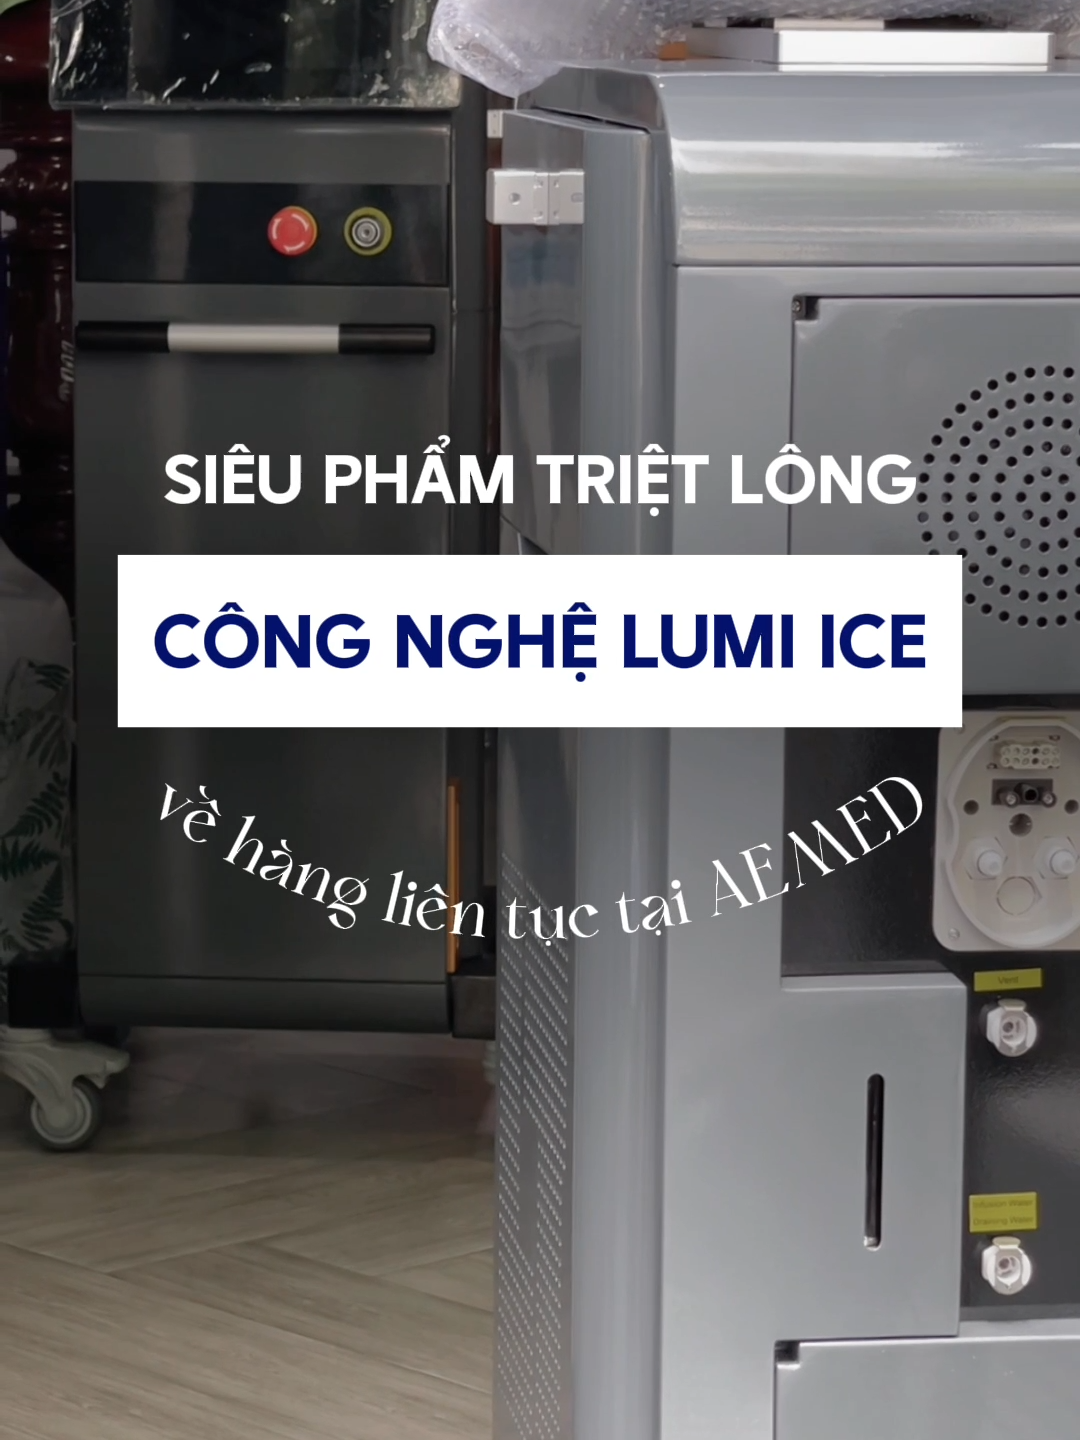 Siêu phẩm công nghệ triệt lông LUMI ICE về hàng! 𝗖𝗵𝗶 𝘁𝗶𝗲̂́𝘁 𝘃𝘂𝗶 𝗹𝗼̀𝗻𝗴 𝗹𝗶𝗲̂𝗻 𝗵𝗲̣̂: ▪️ Hotline: 0️⃣9️⃣4️⃣6️⃣6️⃣5️⃣4️⃣4️⃣8️⃣8️⃣ #AEMED #ThietbithammyAemed #Thammyvien #lamdep #thinhhanh #fyp